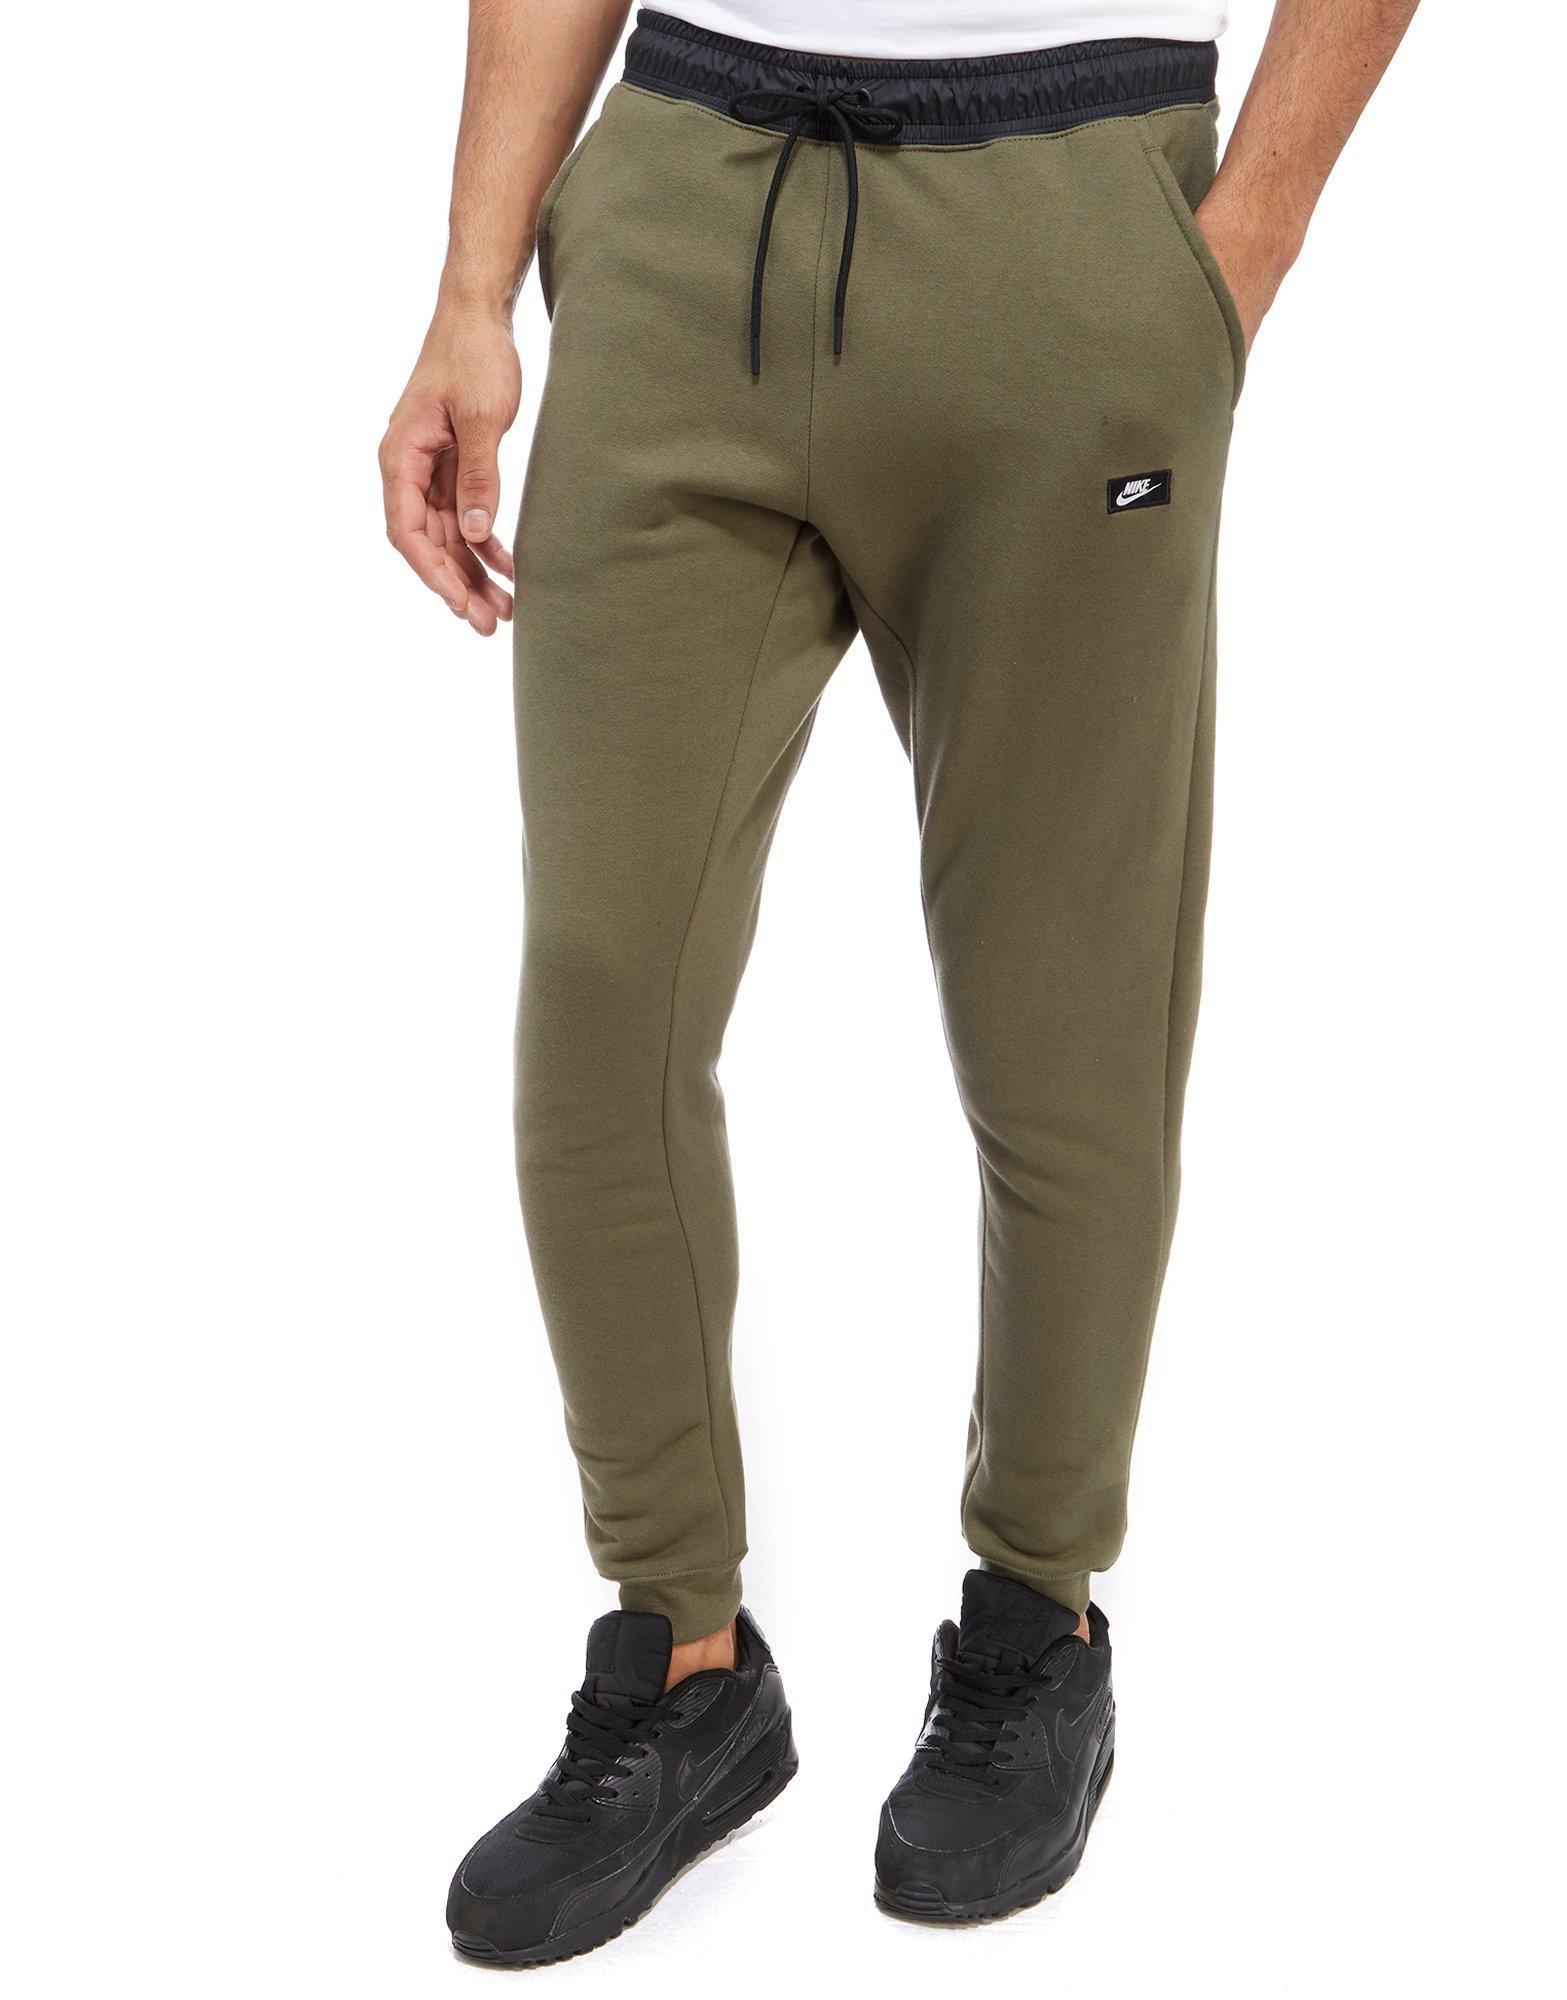 Lyst - Nike Modern Fleece Pants in Green for Men